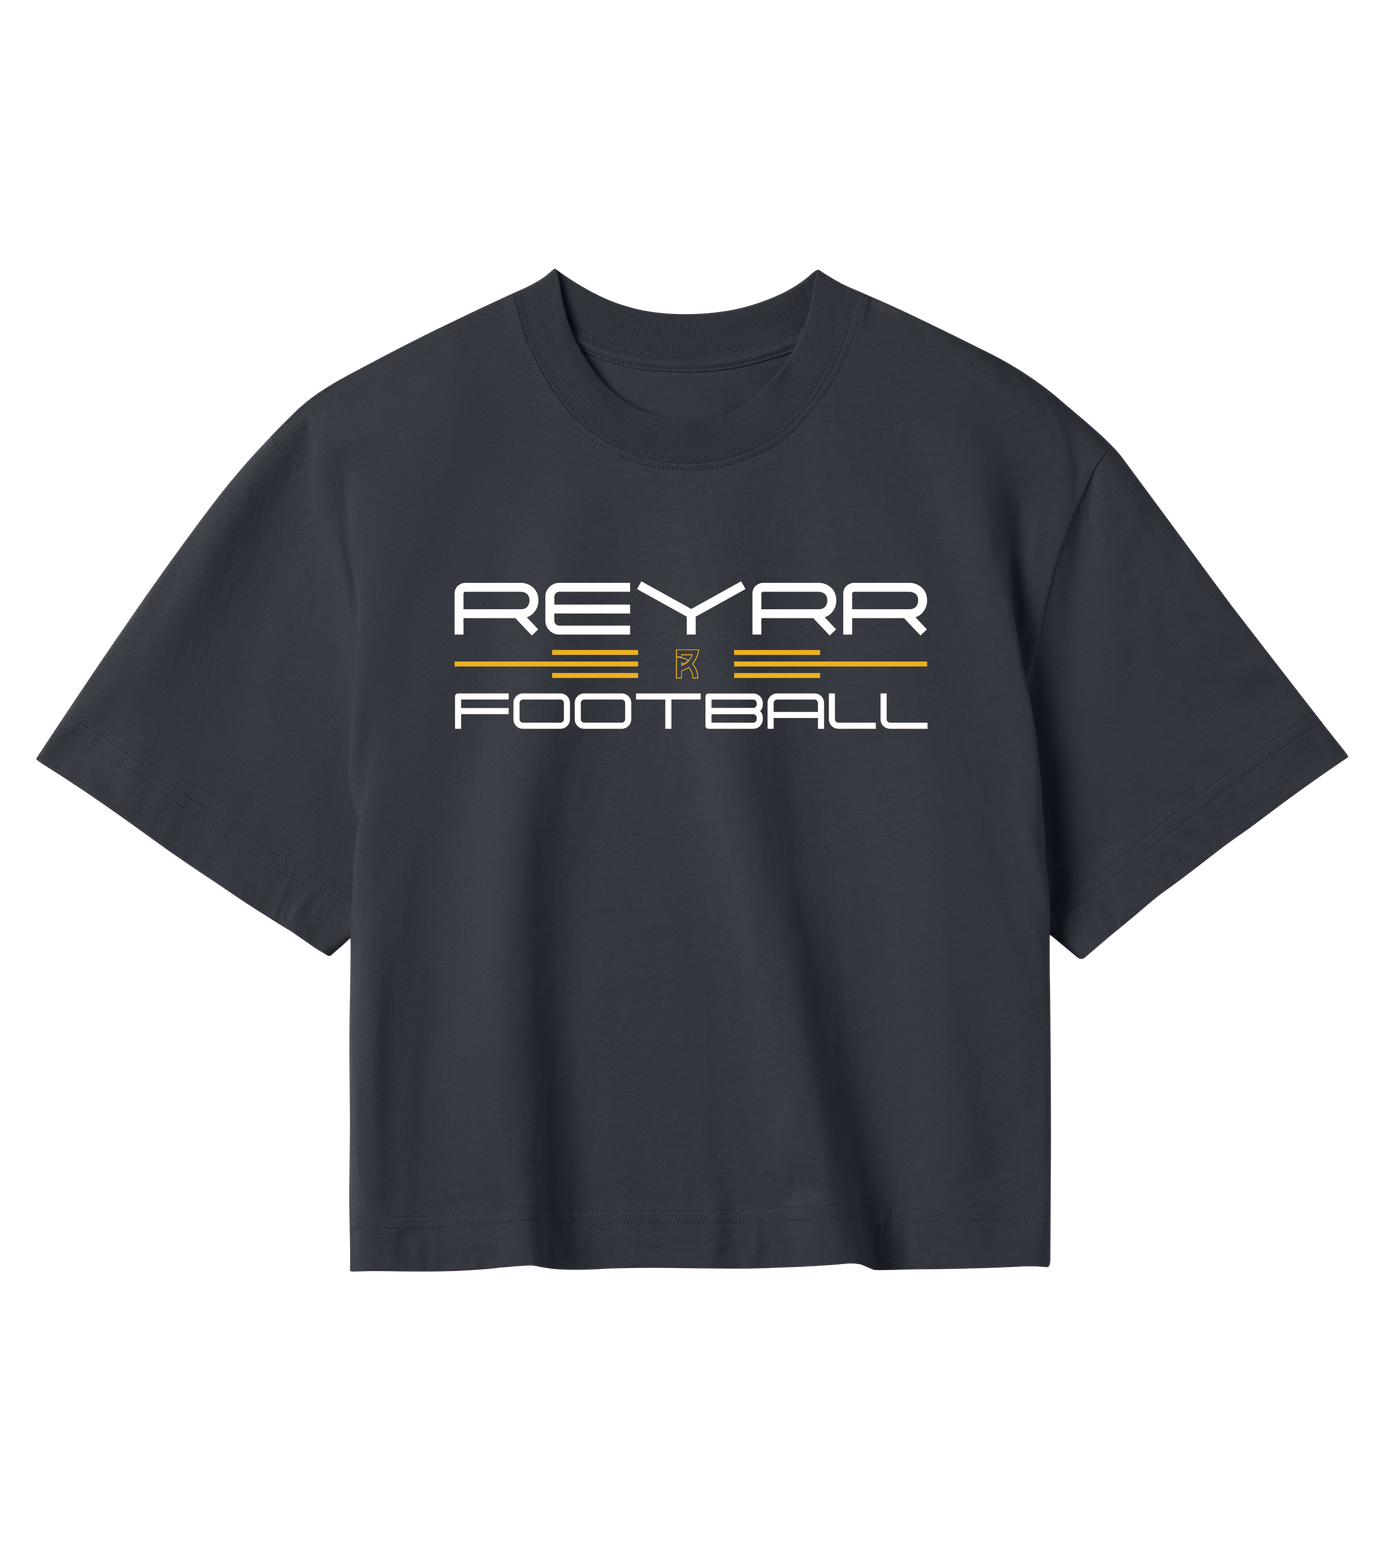 Reyrr Crop Top W - Premium crop_top from REYRR STUDIO - Shop now at Reyrr Athletics